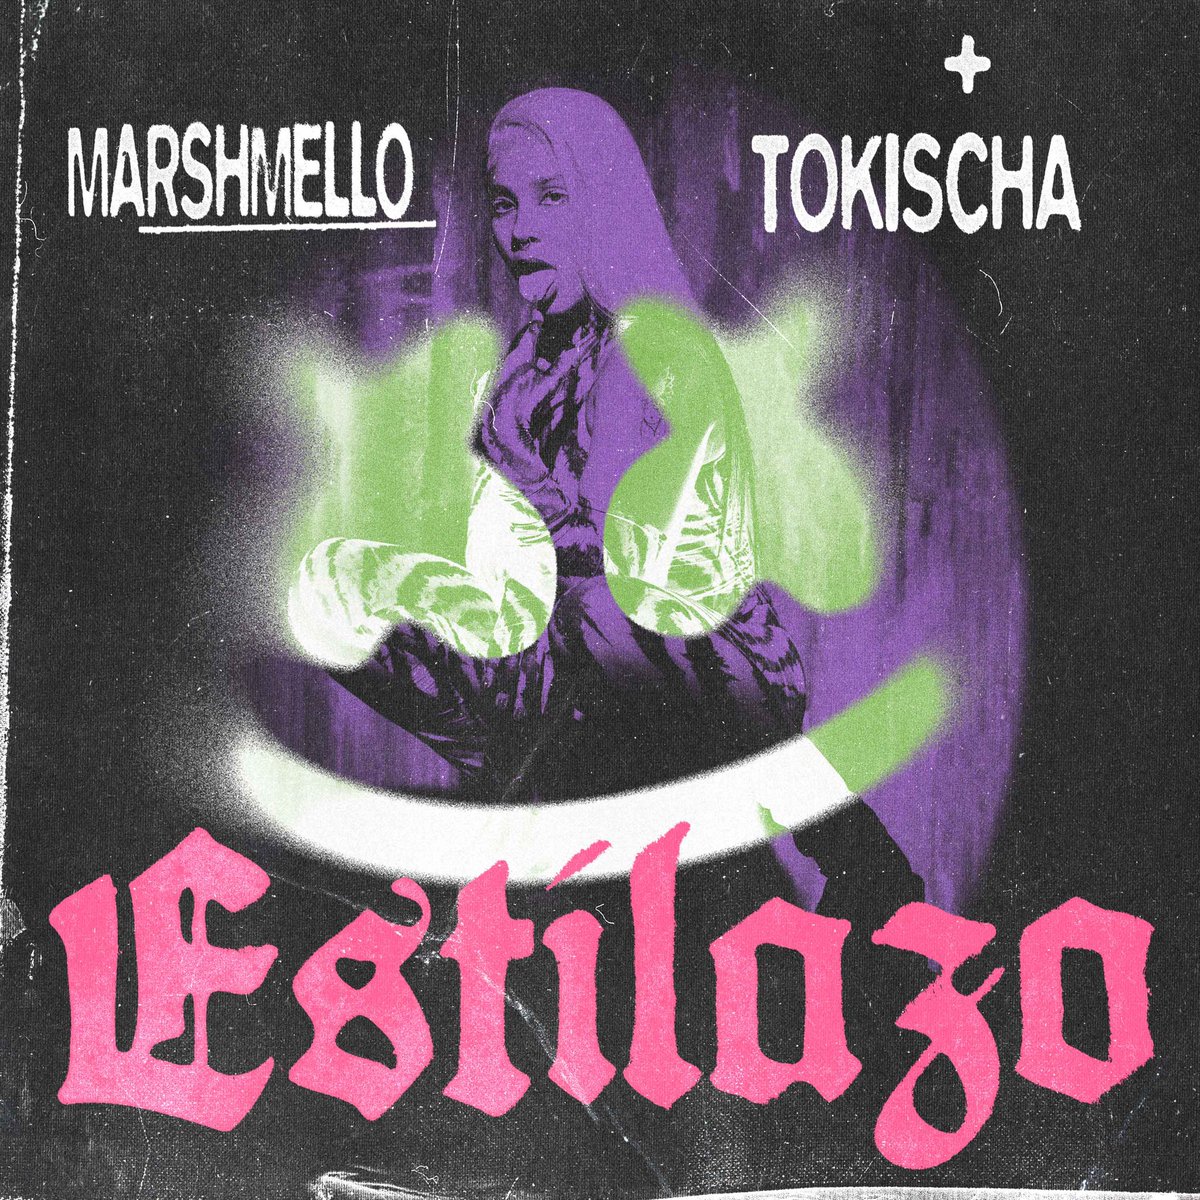 Nuevo vídeo de Marshmello y Tokischa.